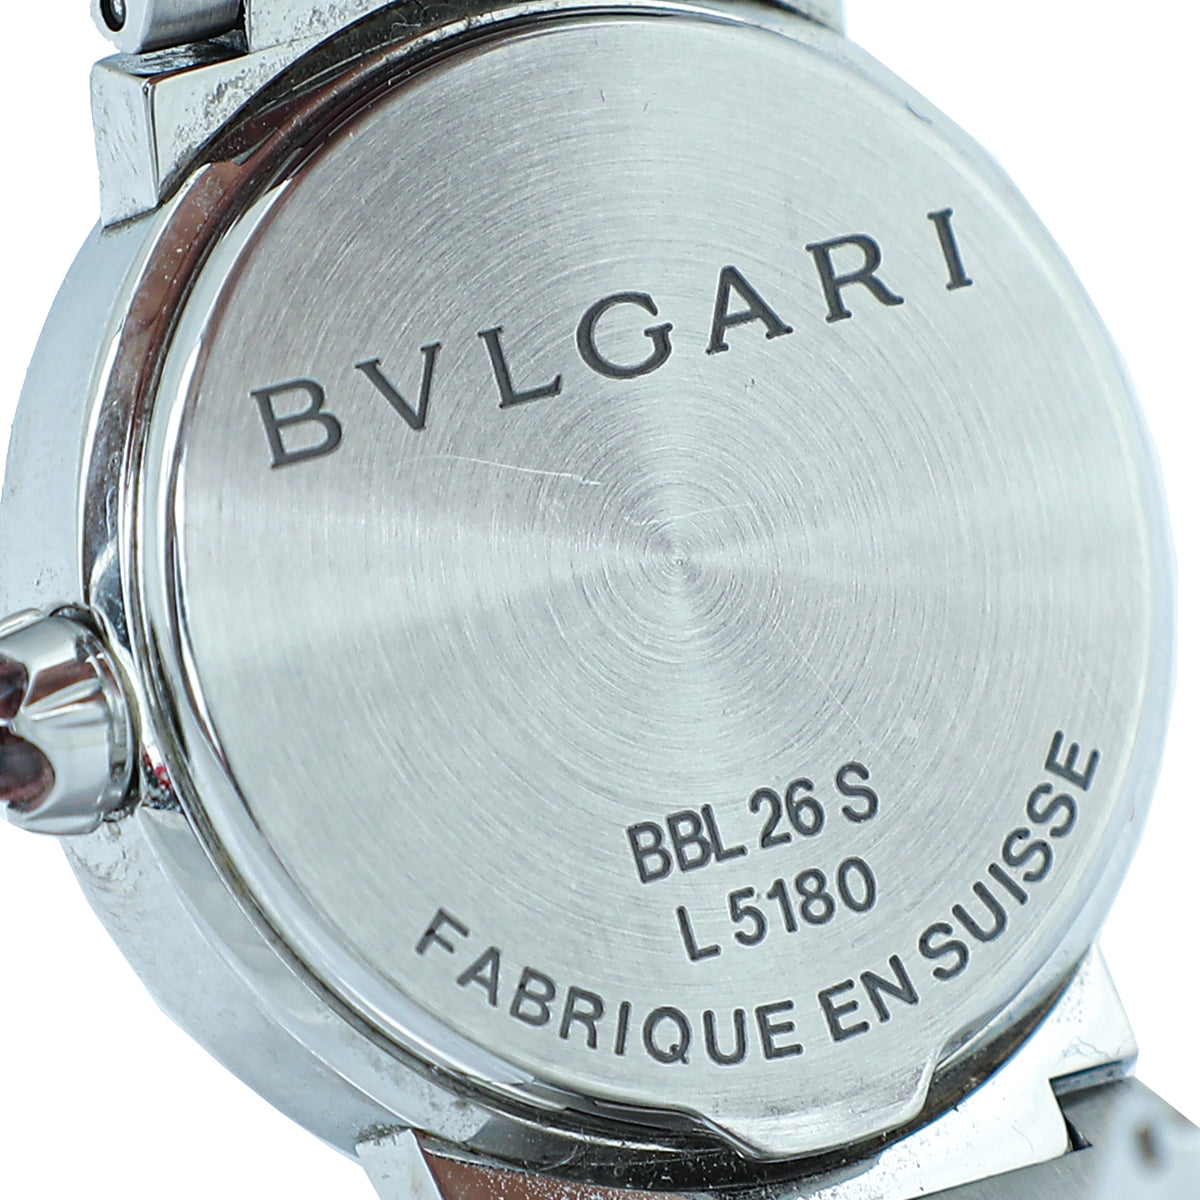 Bvlgari-Bvlgari Stainless Steel MOP Diamond 26mm Quartz Watch